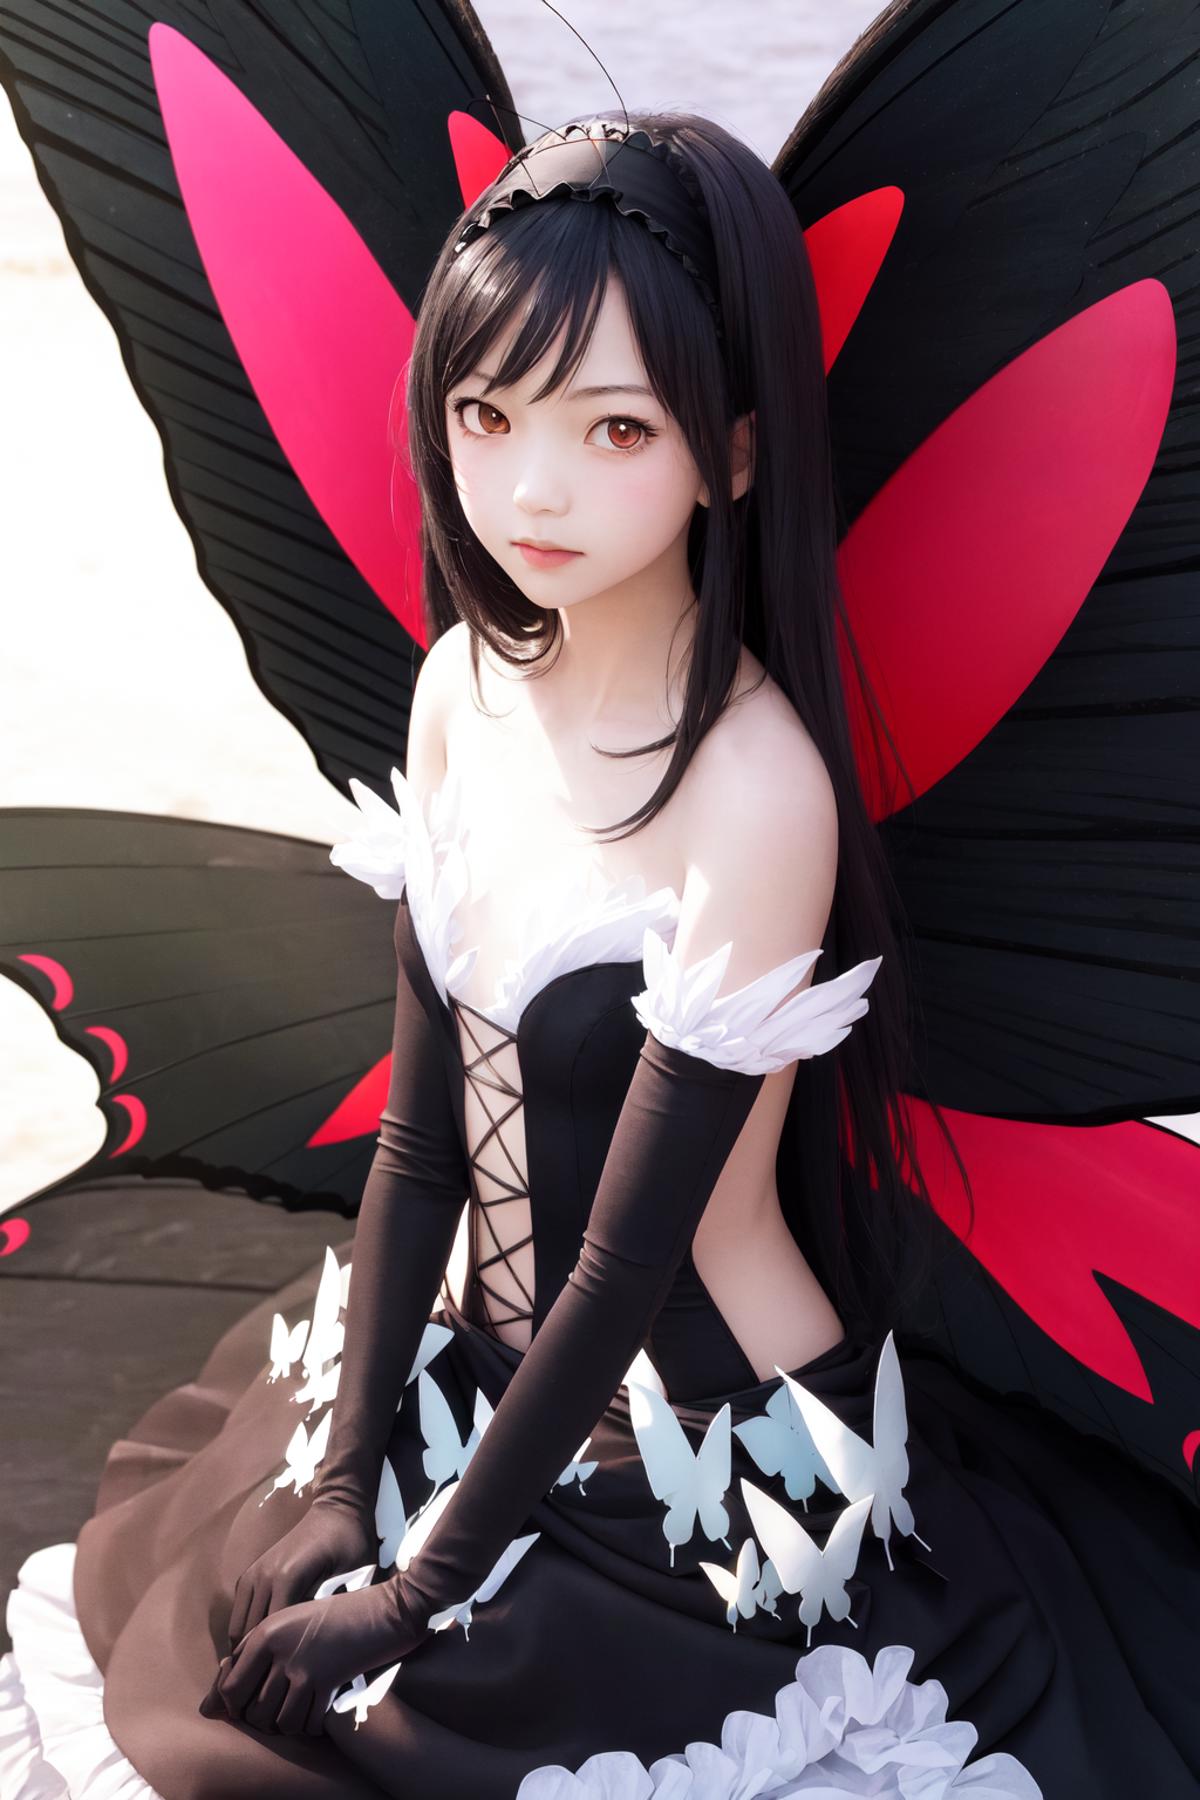 Kuroyukihime (Accel World) | 加速世界 黑雪姬 | アクセル・ワールド 黒雪姫 image by Akii